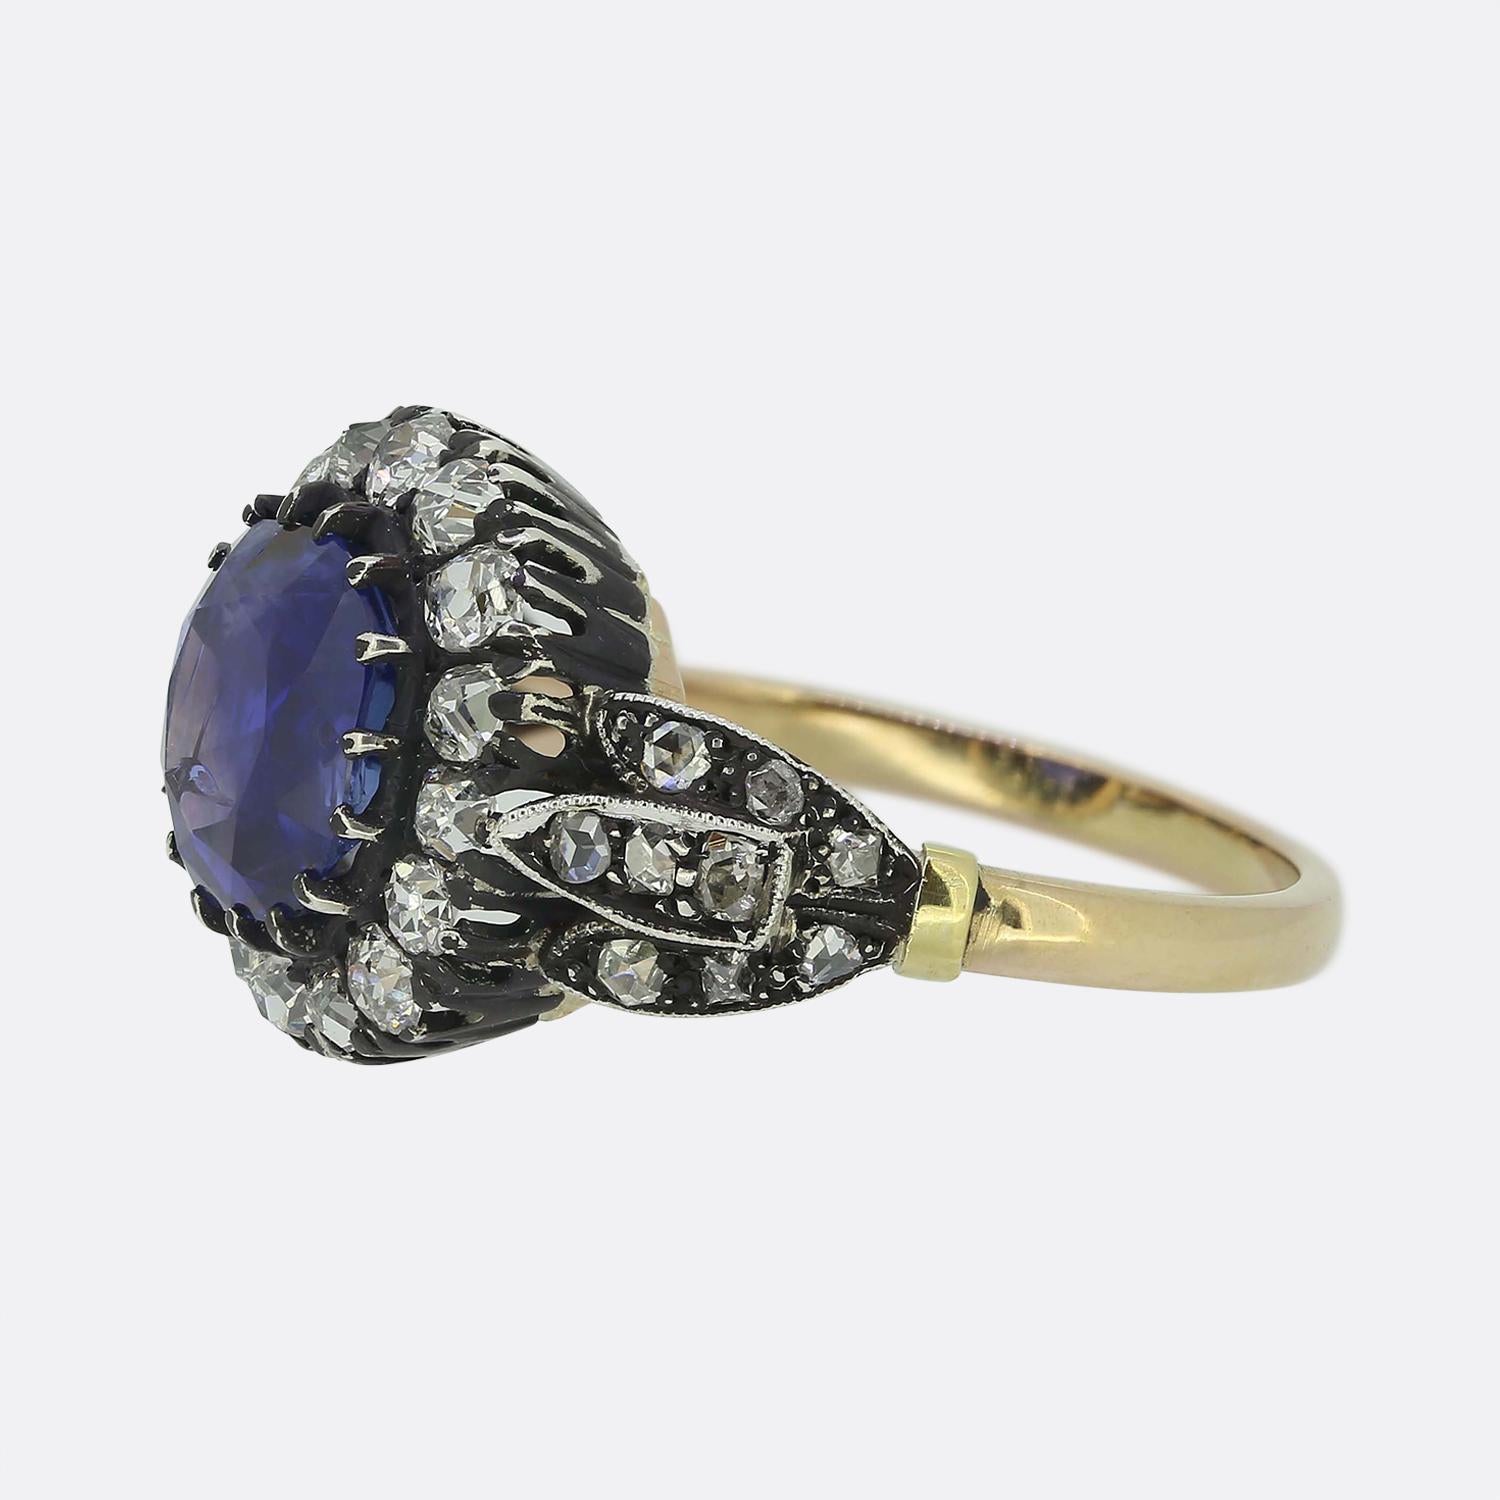 Hier haben wir einen einfach wunderschönen Saphir- und Diamant-Cluster-Ring. Dieses Vintage-Stück wurde fachmännisch im frühviktorianischen Stil gefertigt und präsentiert einen faszinierenden, rund facettierten Saphir burmesischen Ursprungs. Dieser